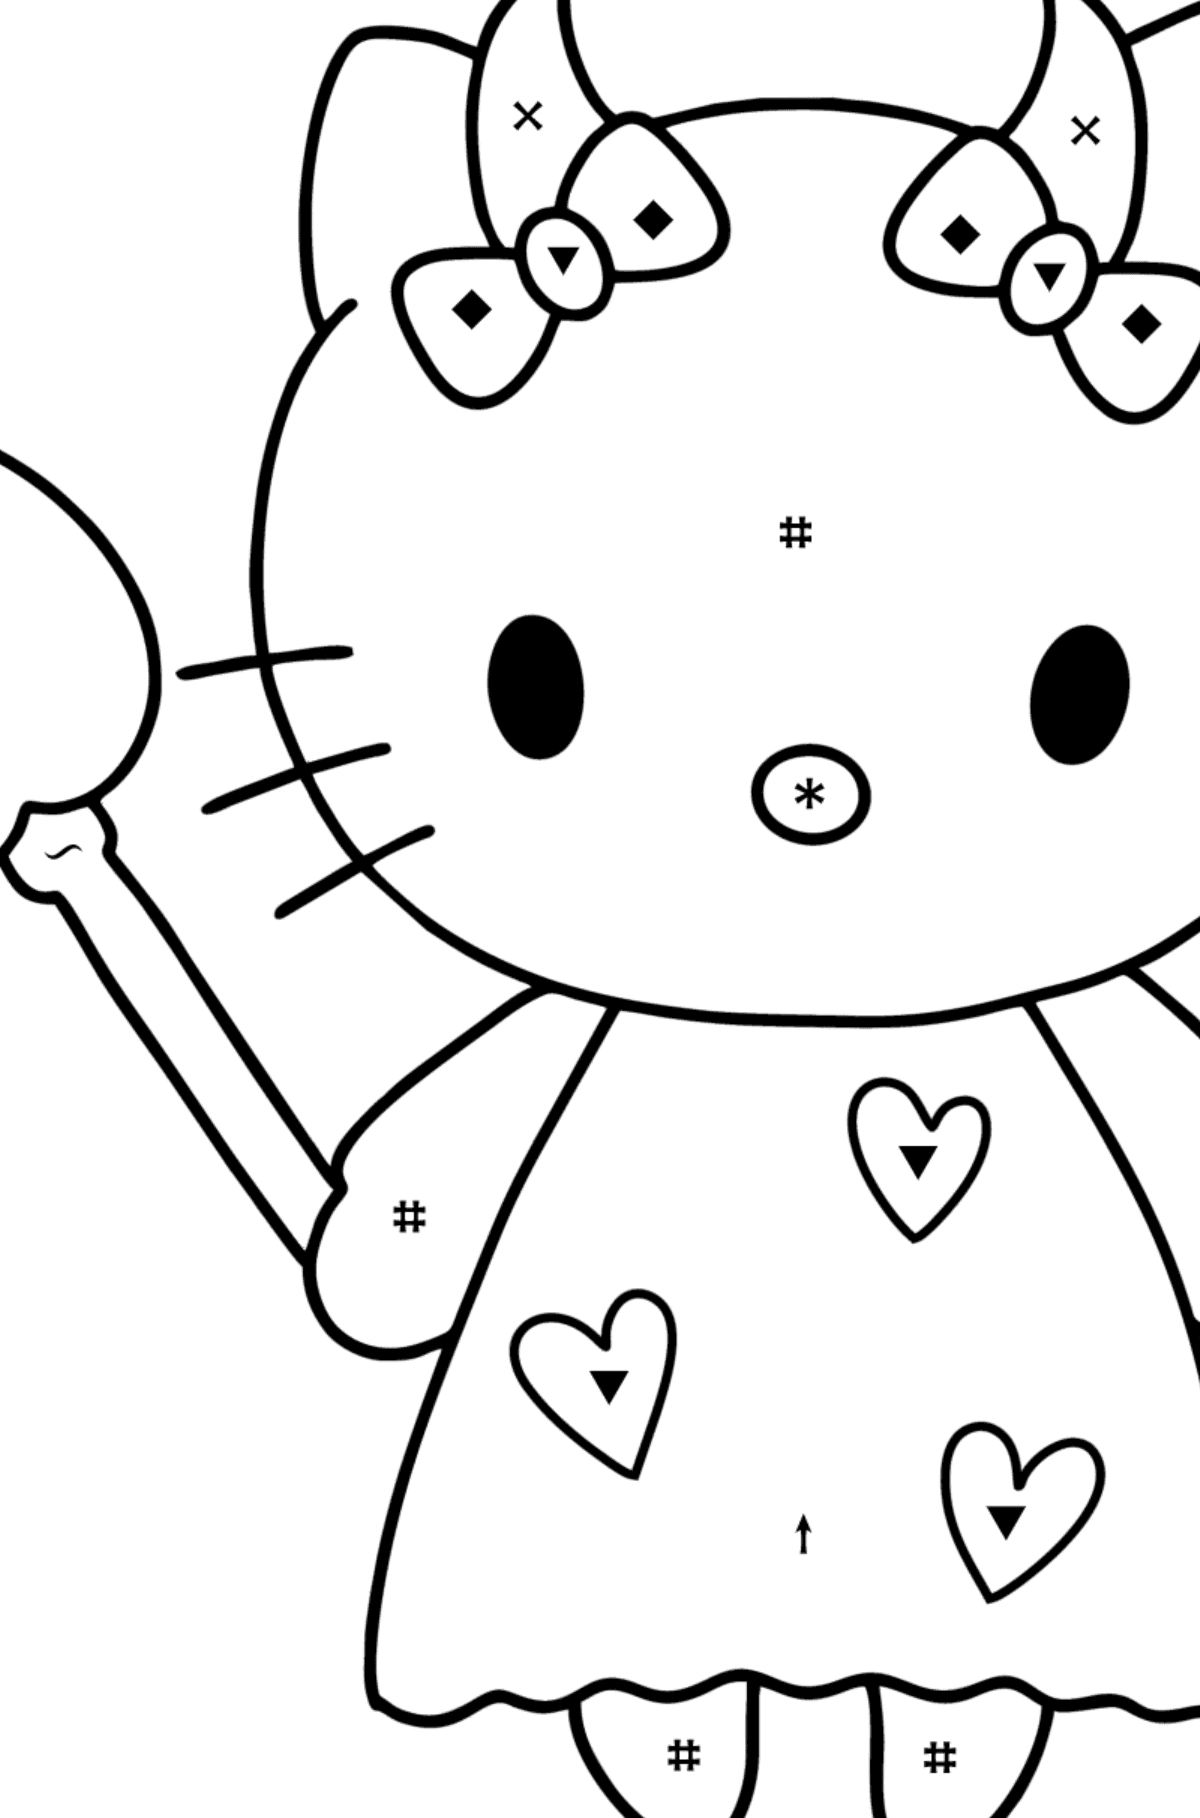 Boyama sayfası Hello Kitty şeytan - Sembollerle Boyama çocuklar için